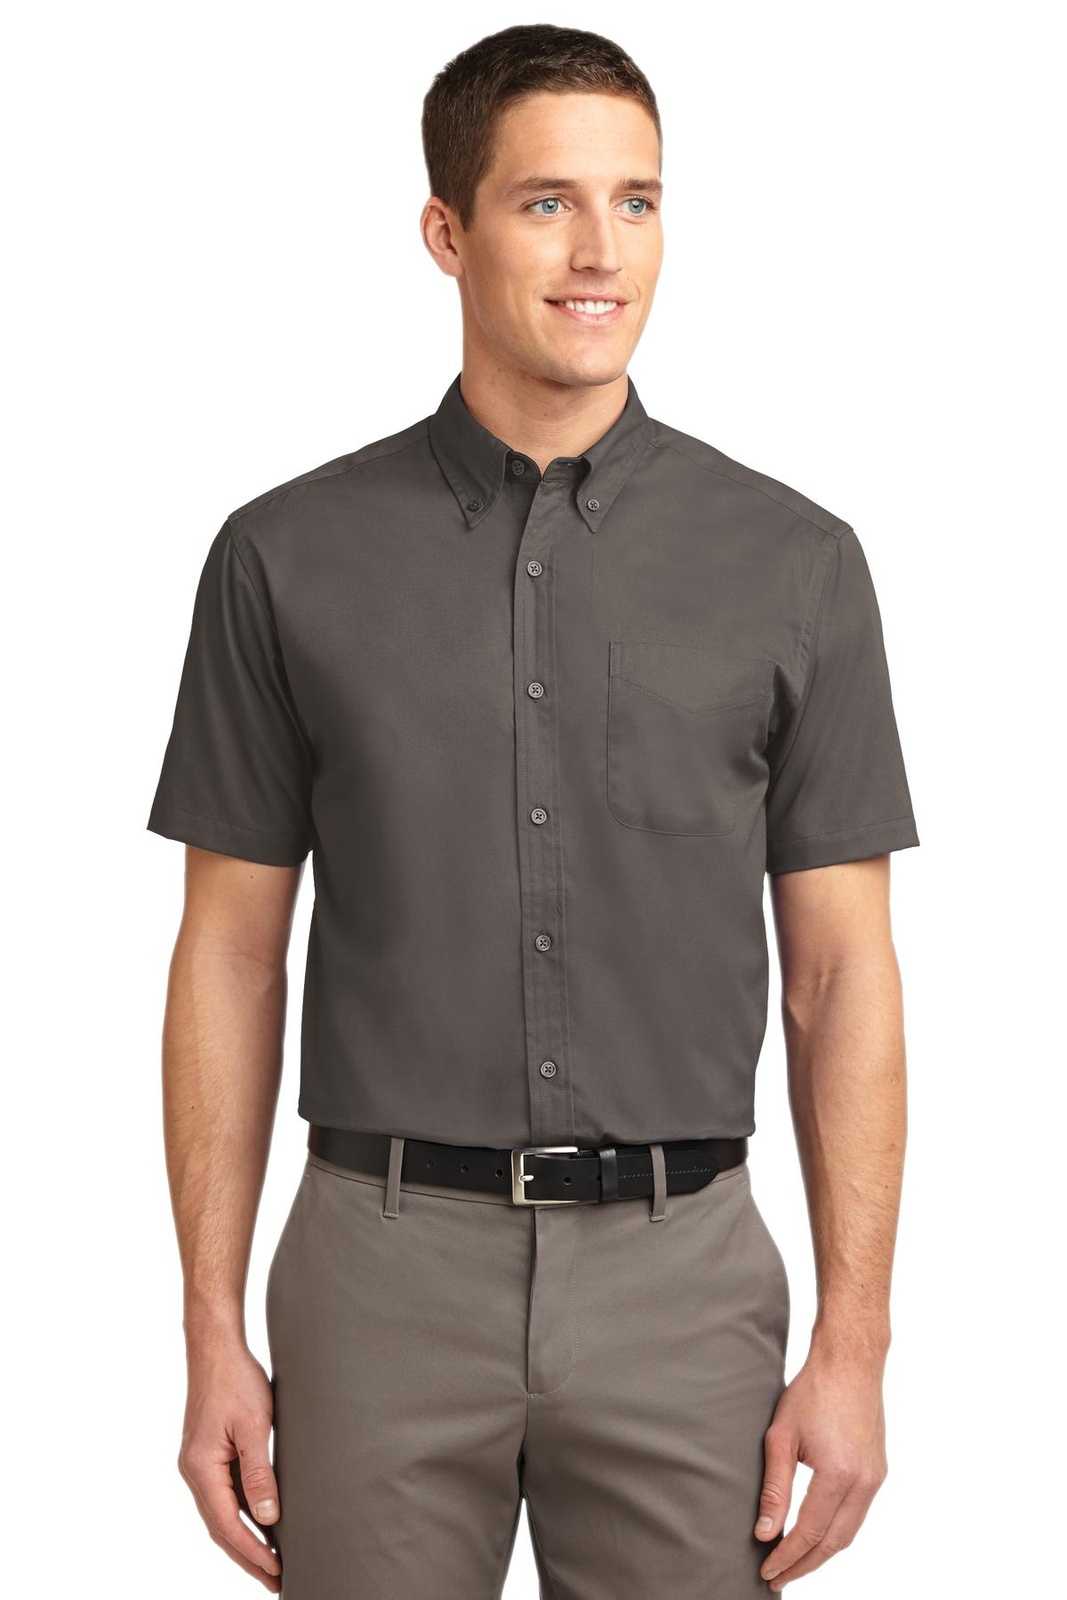 Port Authority S508 Short Sleeve Easy Care Shirt - Bark - HIT a Double - 1